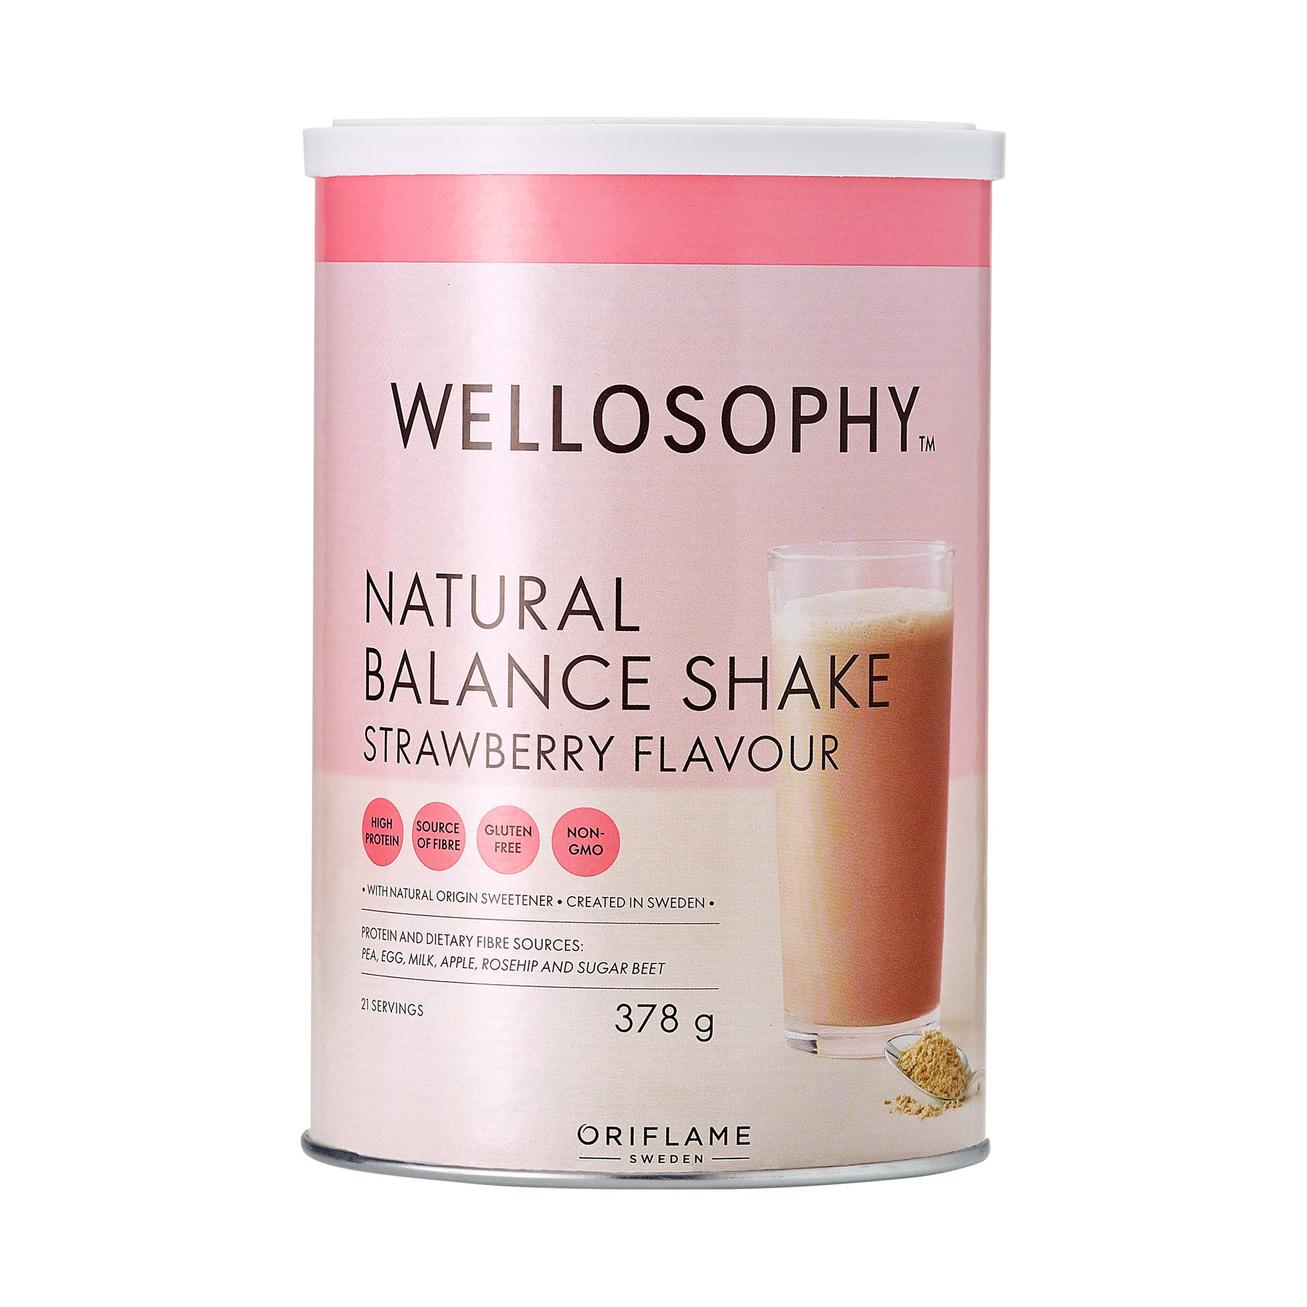 Natural Balance Shake Strawberry Flavour för 479 kr på Oriflame